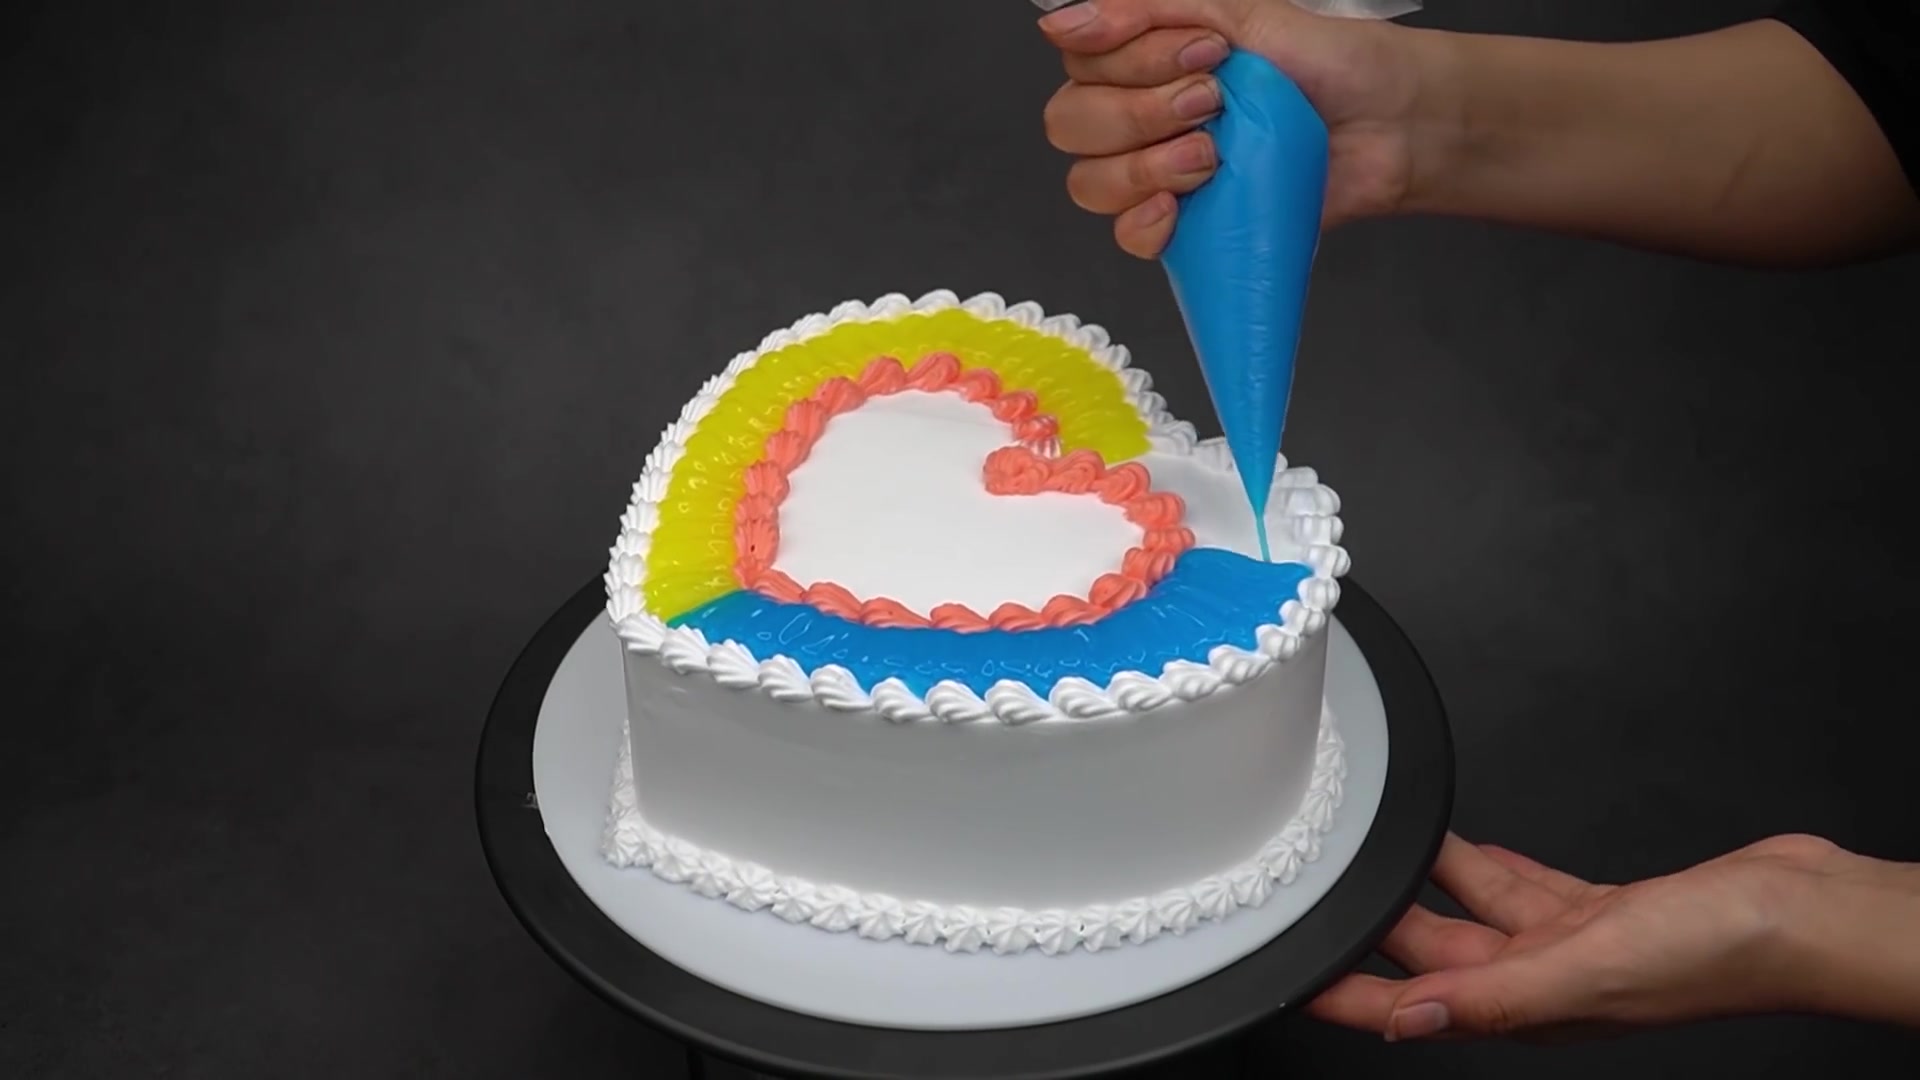 爱心蛋糕,心形生日蛋糕图片浪漫 - 伤感说说吧